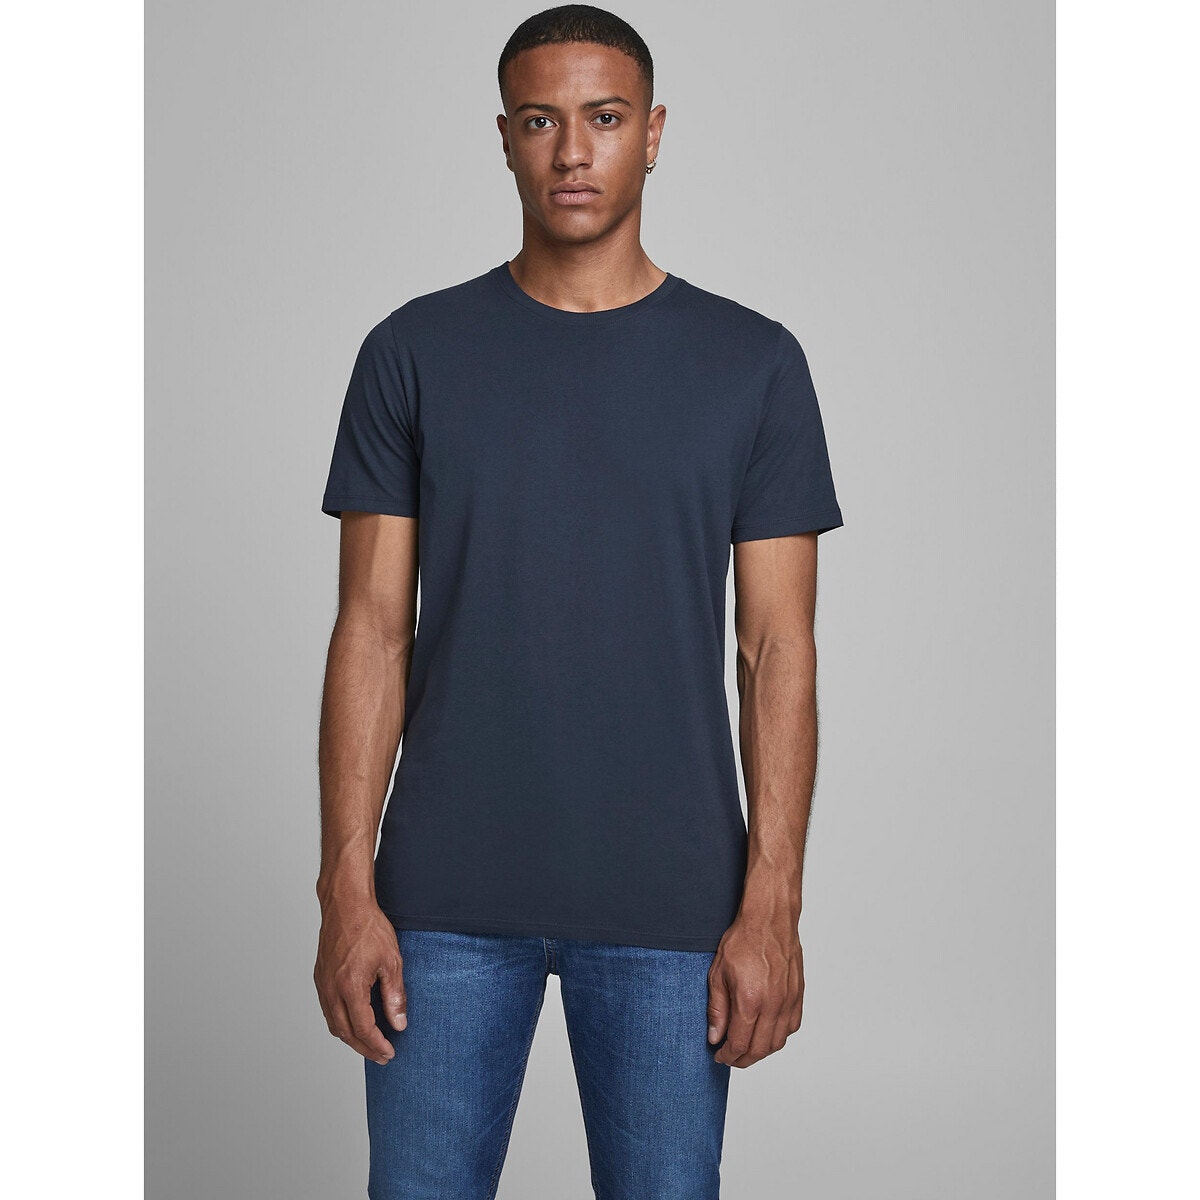 ΑΝΔΡΑΣ | Μπλούζες & Πουκάμισα | T-shirts Μπλούζα με στρογγυλή λαιμόκοψη από βιολογικό βαμβάκι